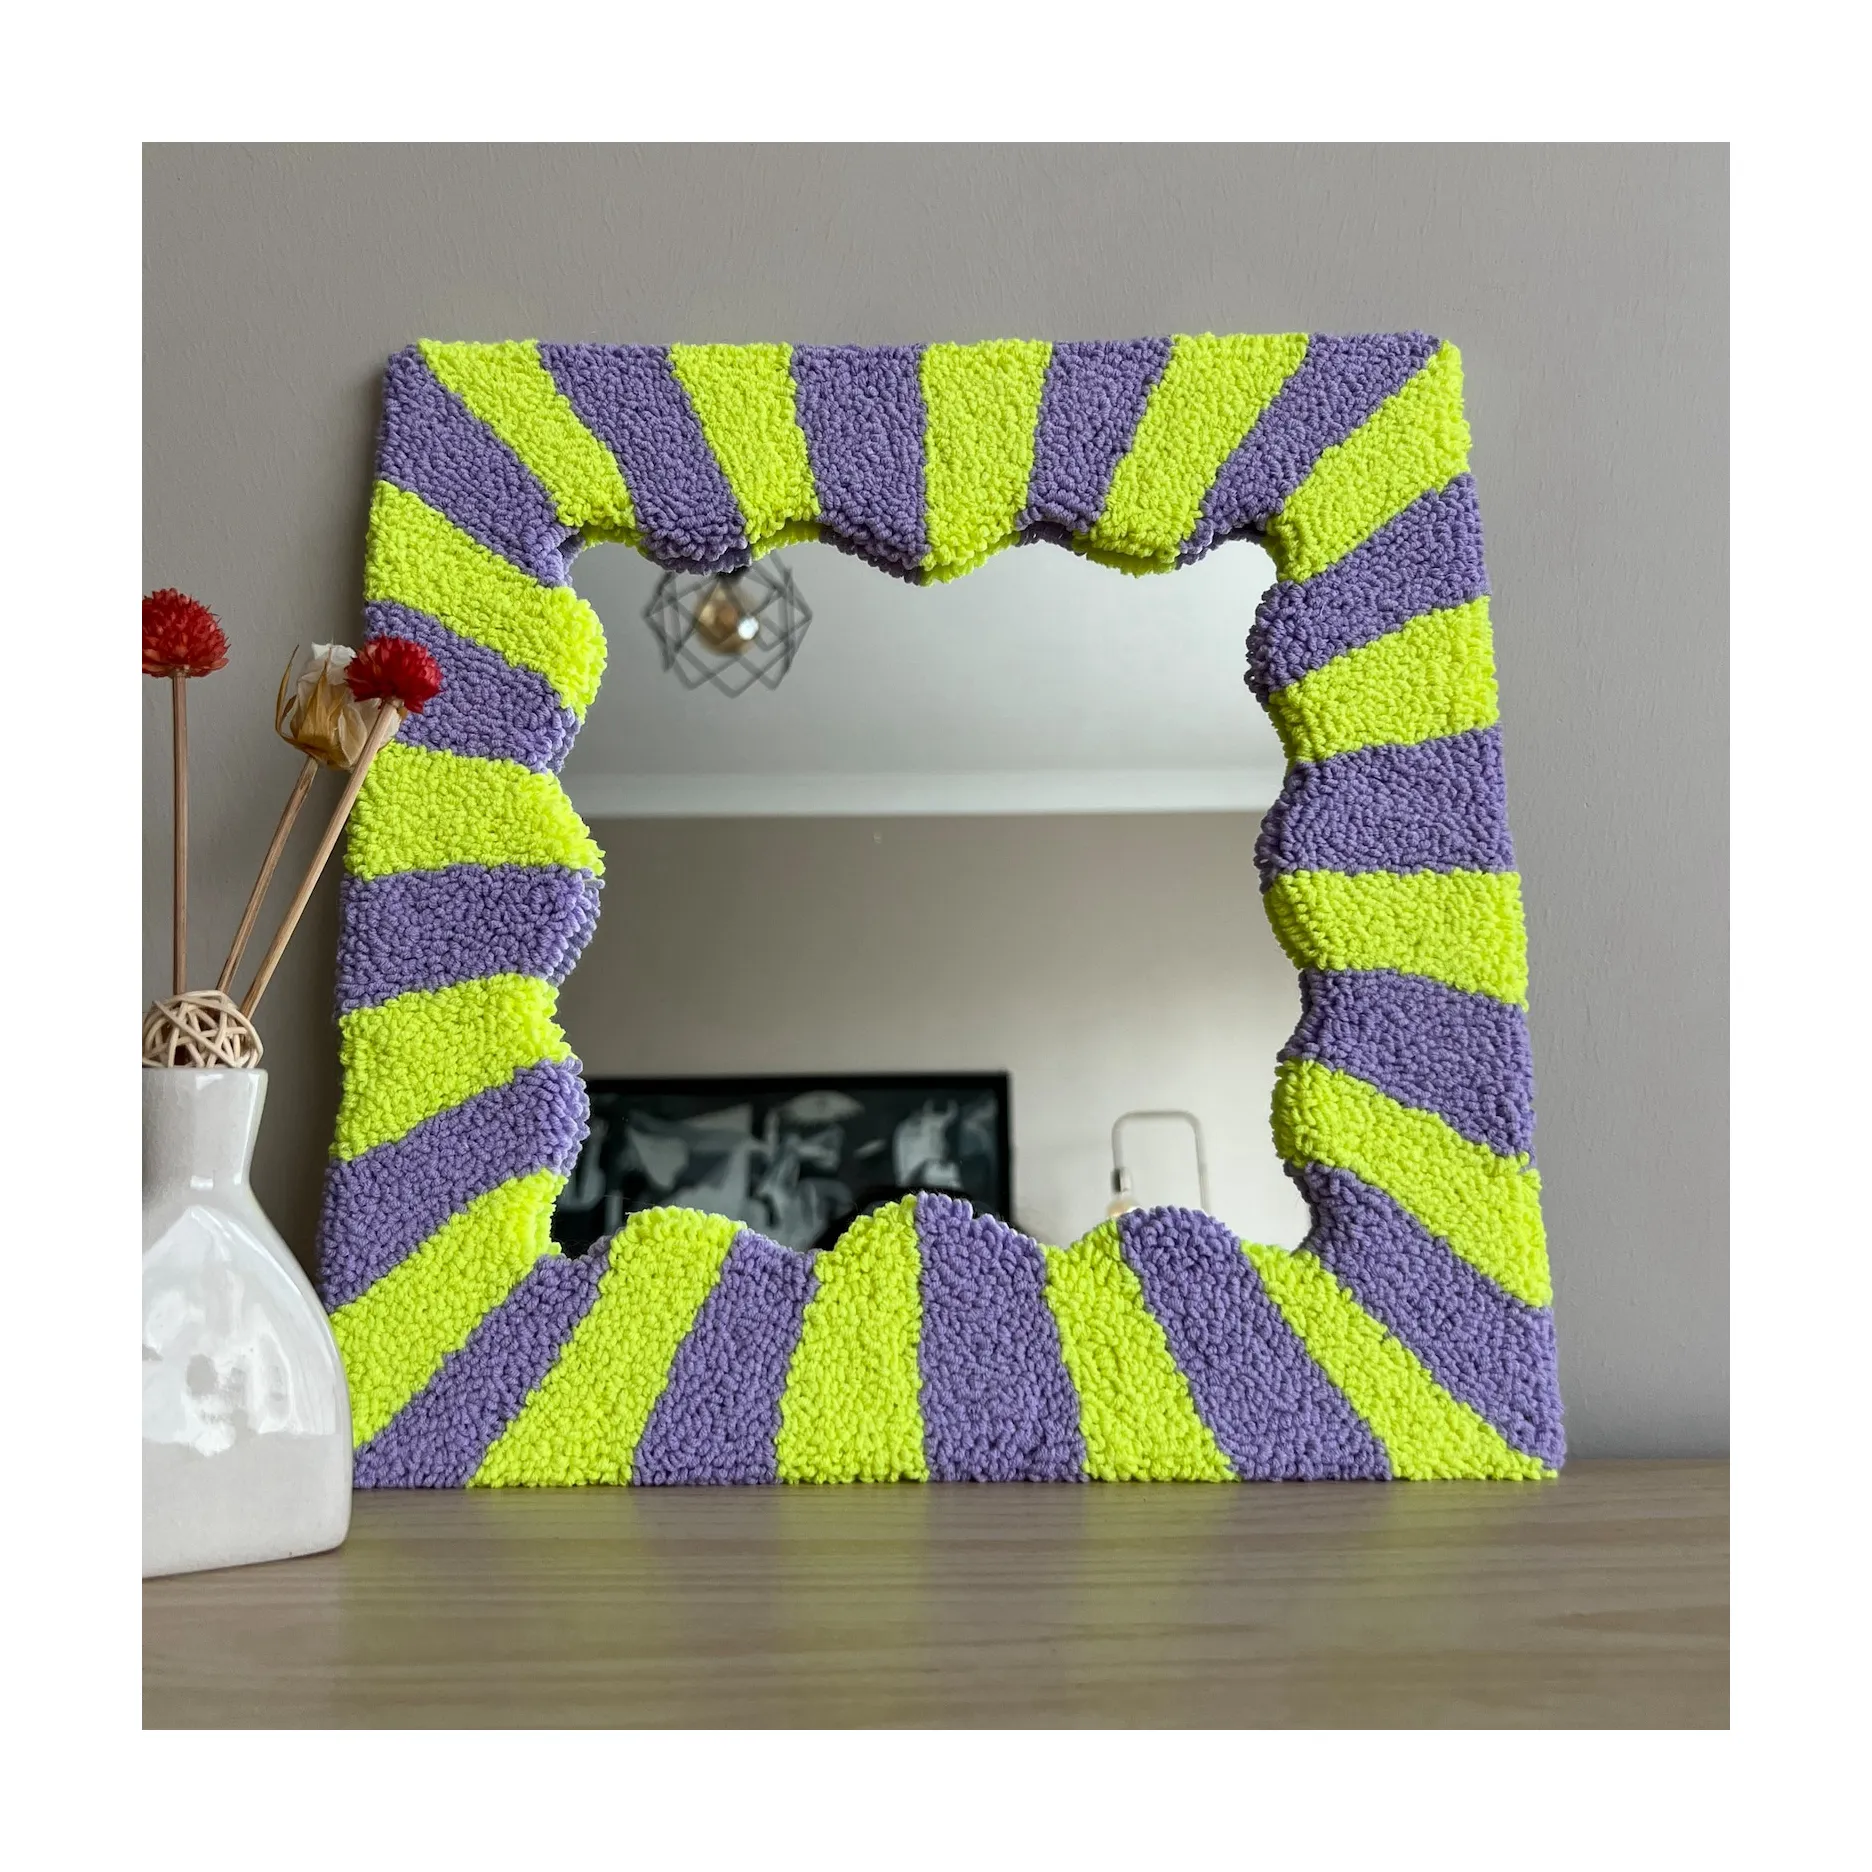 مرآة لوجه تصميم منزلي مزخرف أصفر أرجواني مرآة مكياج مربعة مطرزة صناعة يدوية